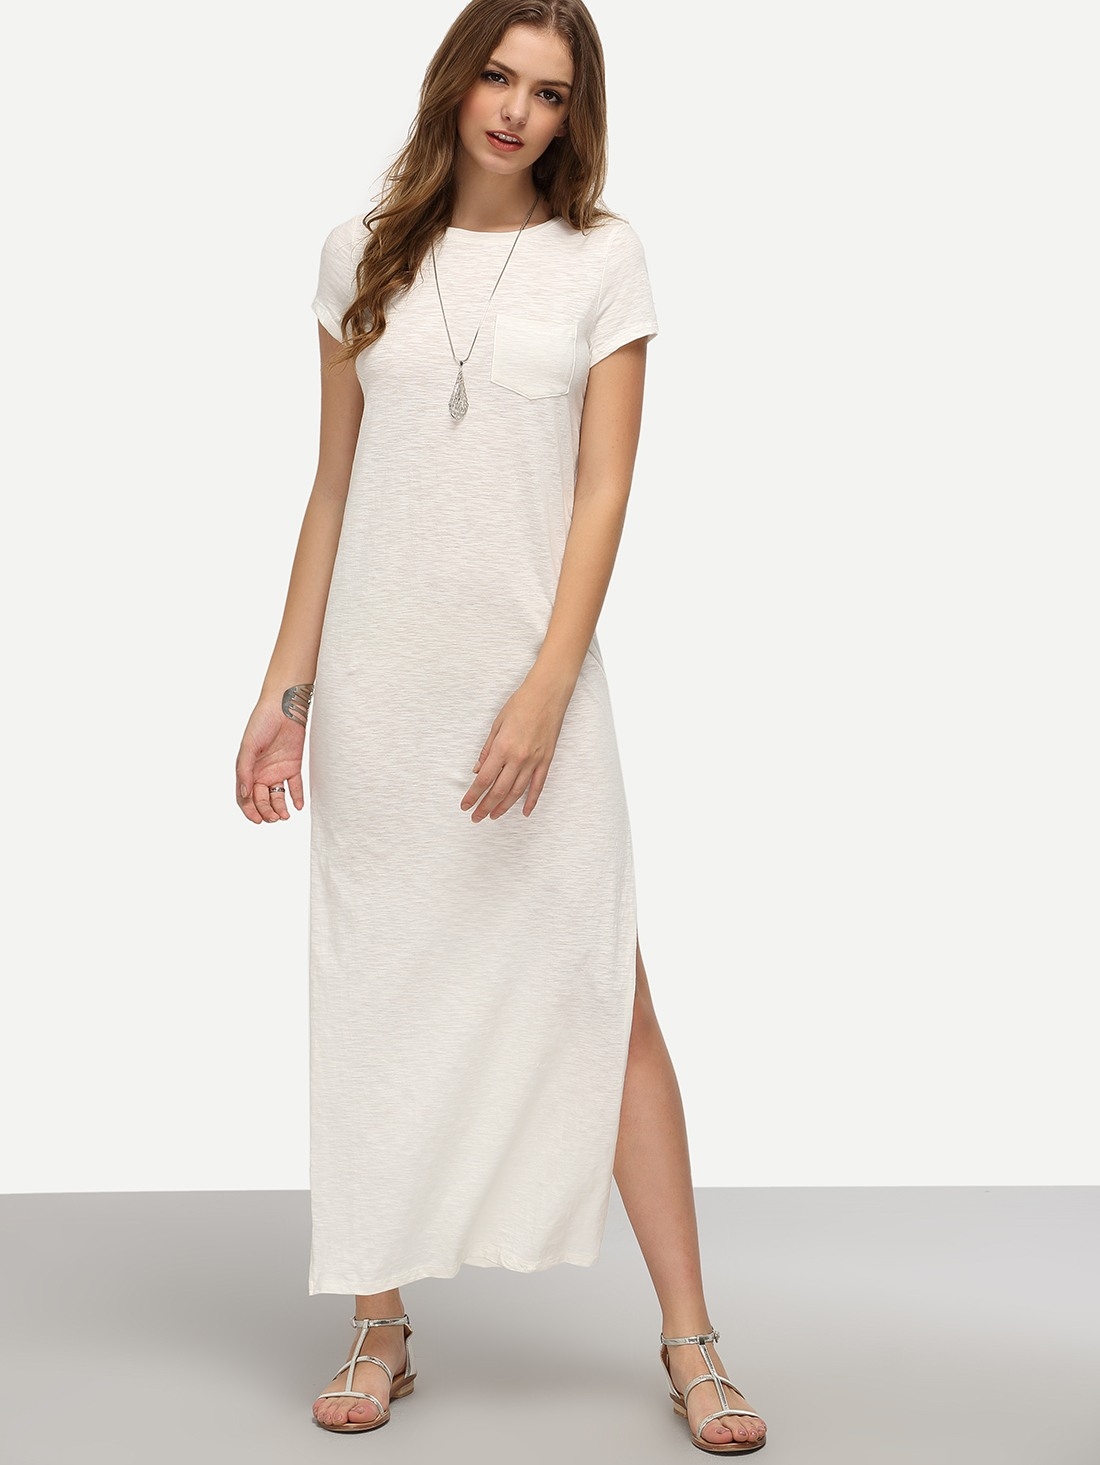 Perfekt Kleid Weiß Lang GalerieAbend Coolste Kleid Weiß Lang Vertrieb